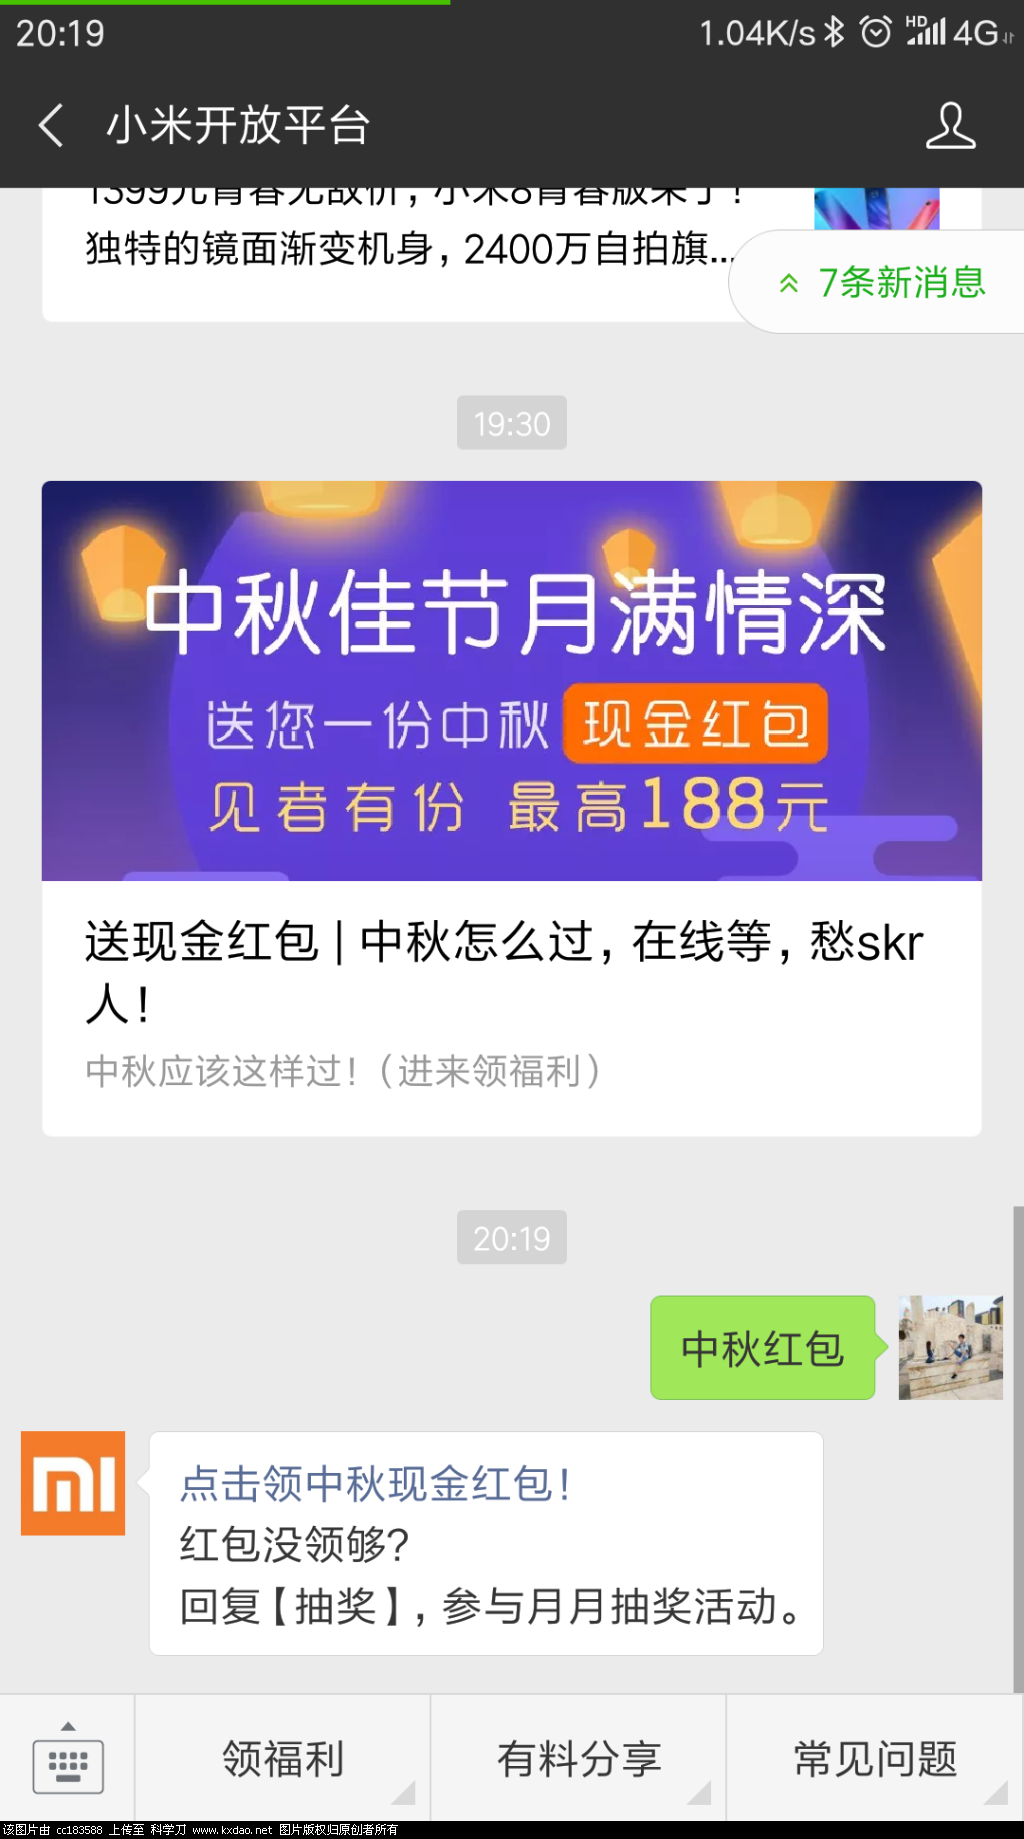 Screenshot_2018-09-20-20-19-47-351_com.tencent.mm.png